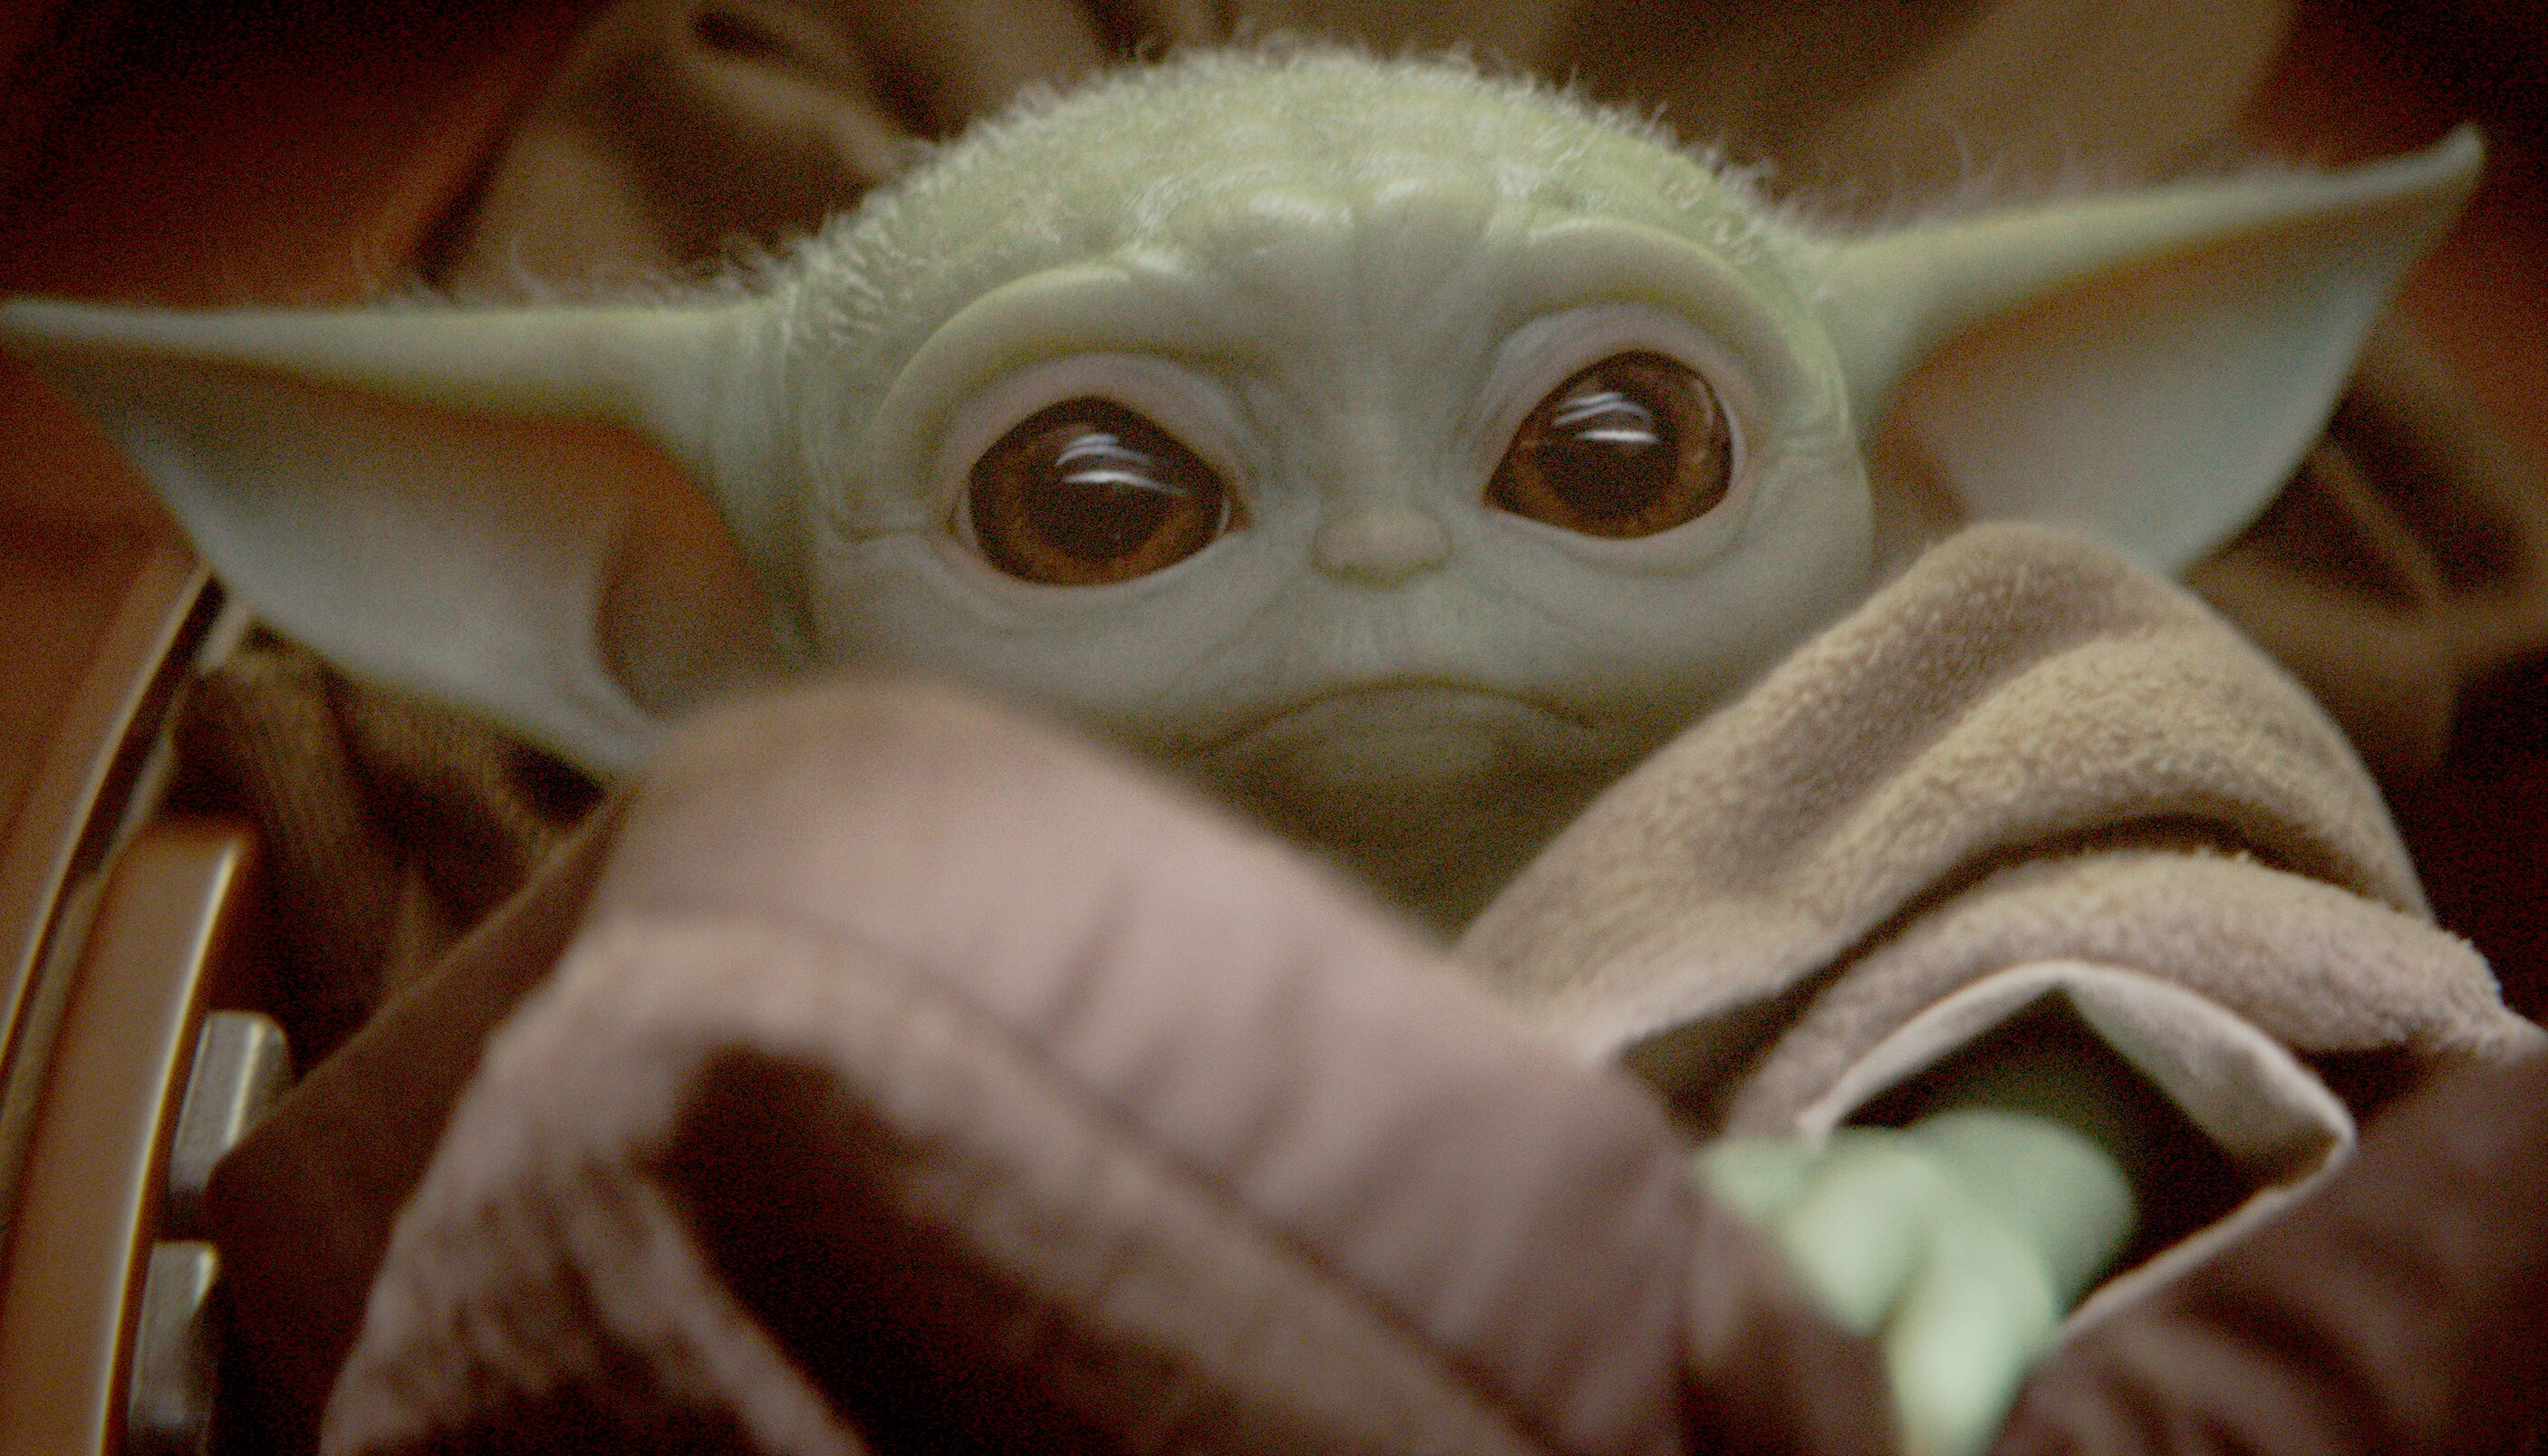 Série “Mandalorian” traz Werner Herzog e “bebê Yoda”